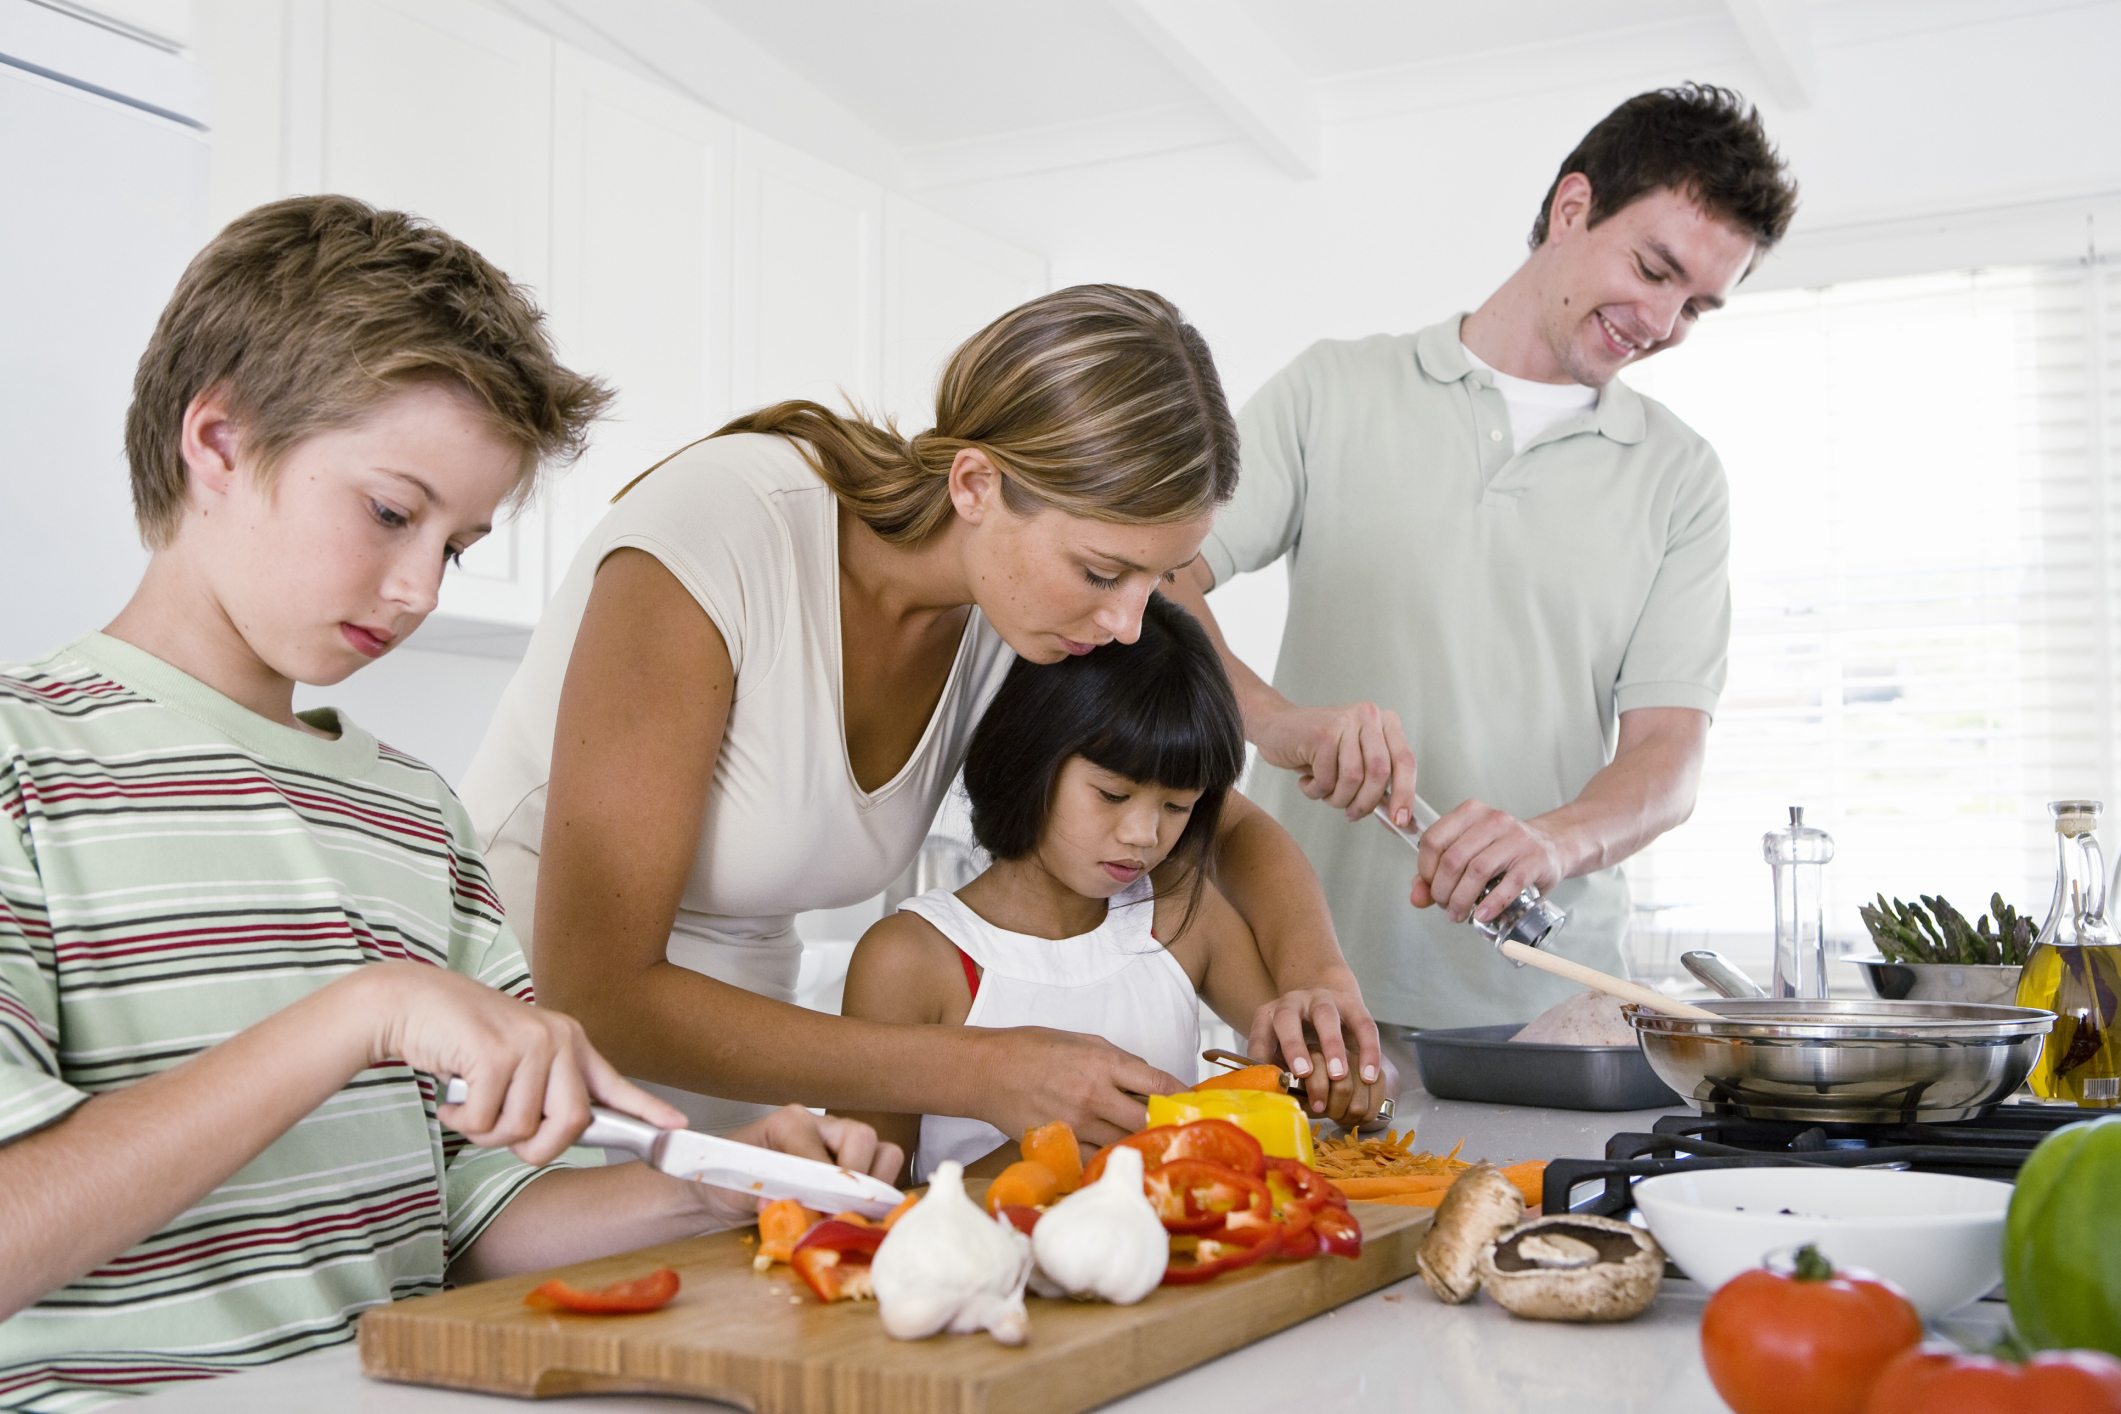 Cha mẹ có thể cho con trẻ nghe các bài hát tiếng Anh trong khi nấu ăn hoặc sáng tạo các đồ vật thủ công